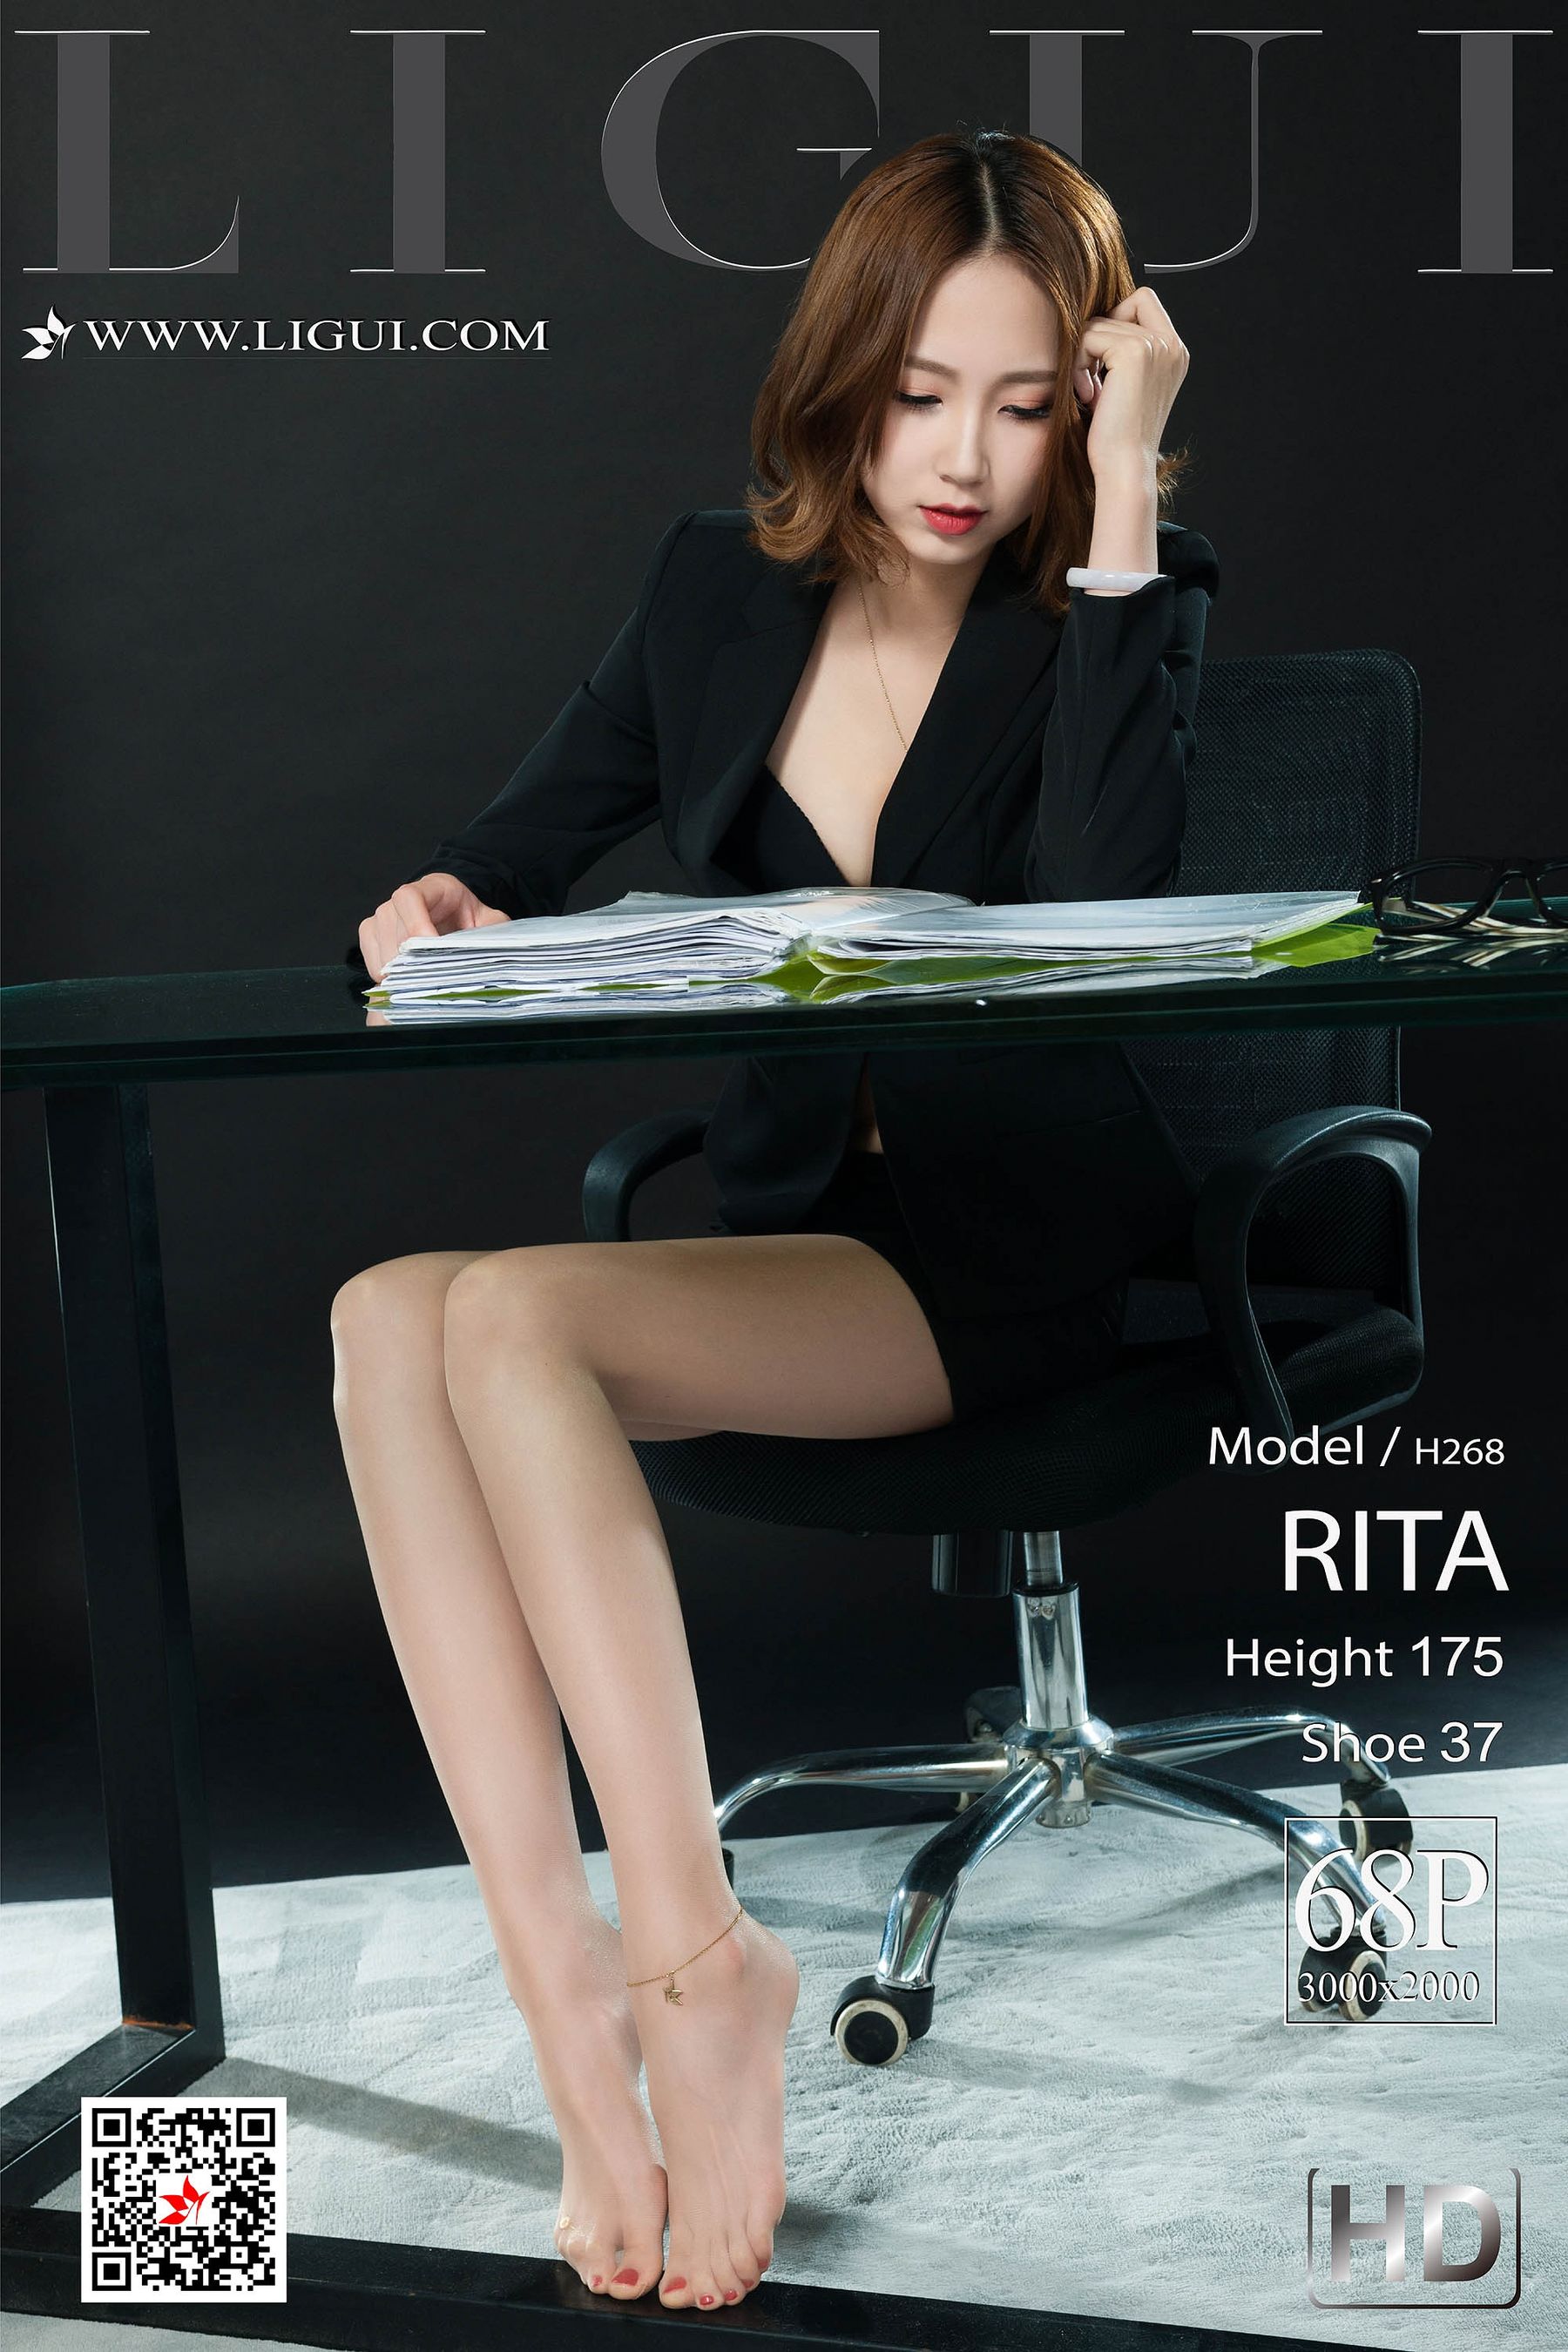 [丽柜LiGui] 网络丽人 Model RITA  第1张